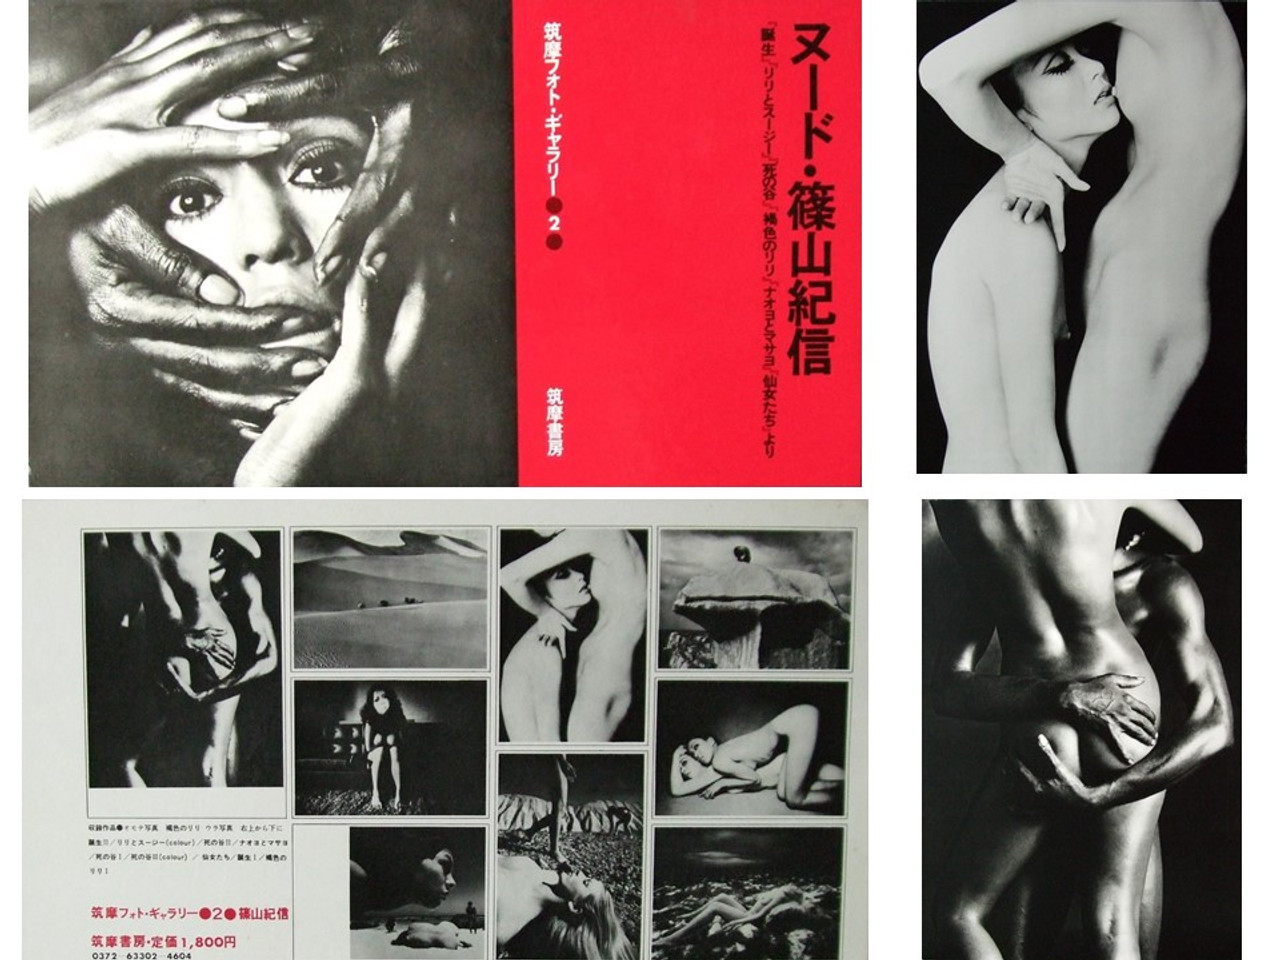 Kishin Shinoyama | Nude Portfolio of 10 Extra-Large Prints